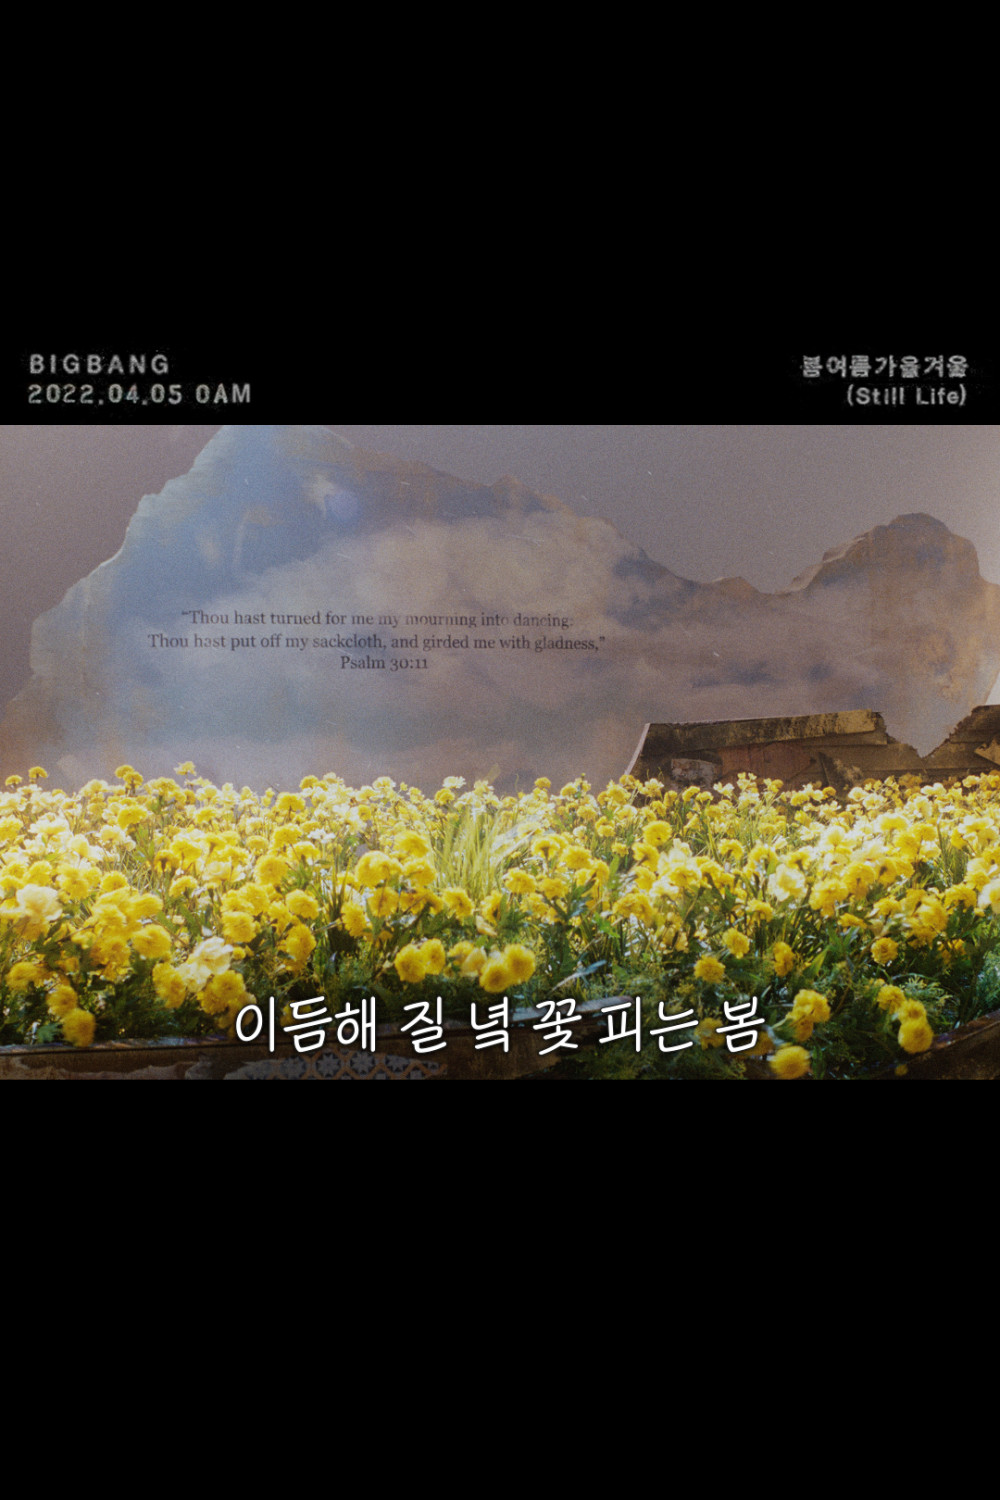 [Камбэк] Big Bang сингл "Still Life": музыкальный клип